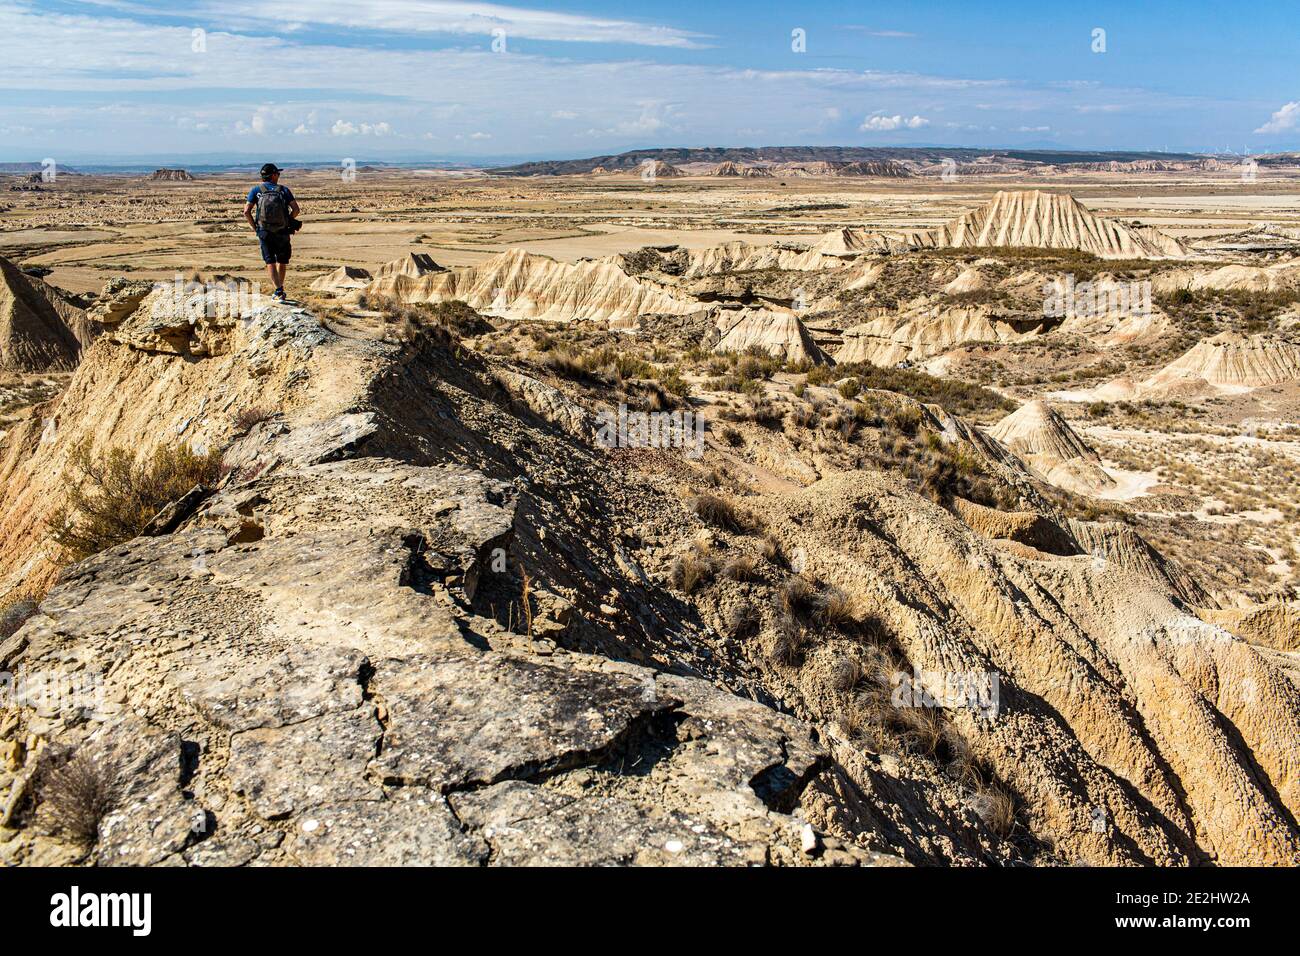 Espagne: Paysage, région naturelle semi-désertique des Bardenas Reales, Navarre. Homme regardant le paysage marqué par l'érosion. Banque D'Images